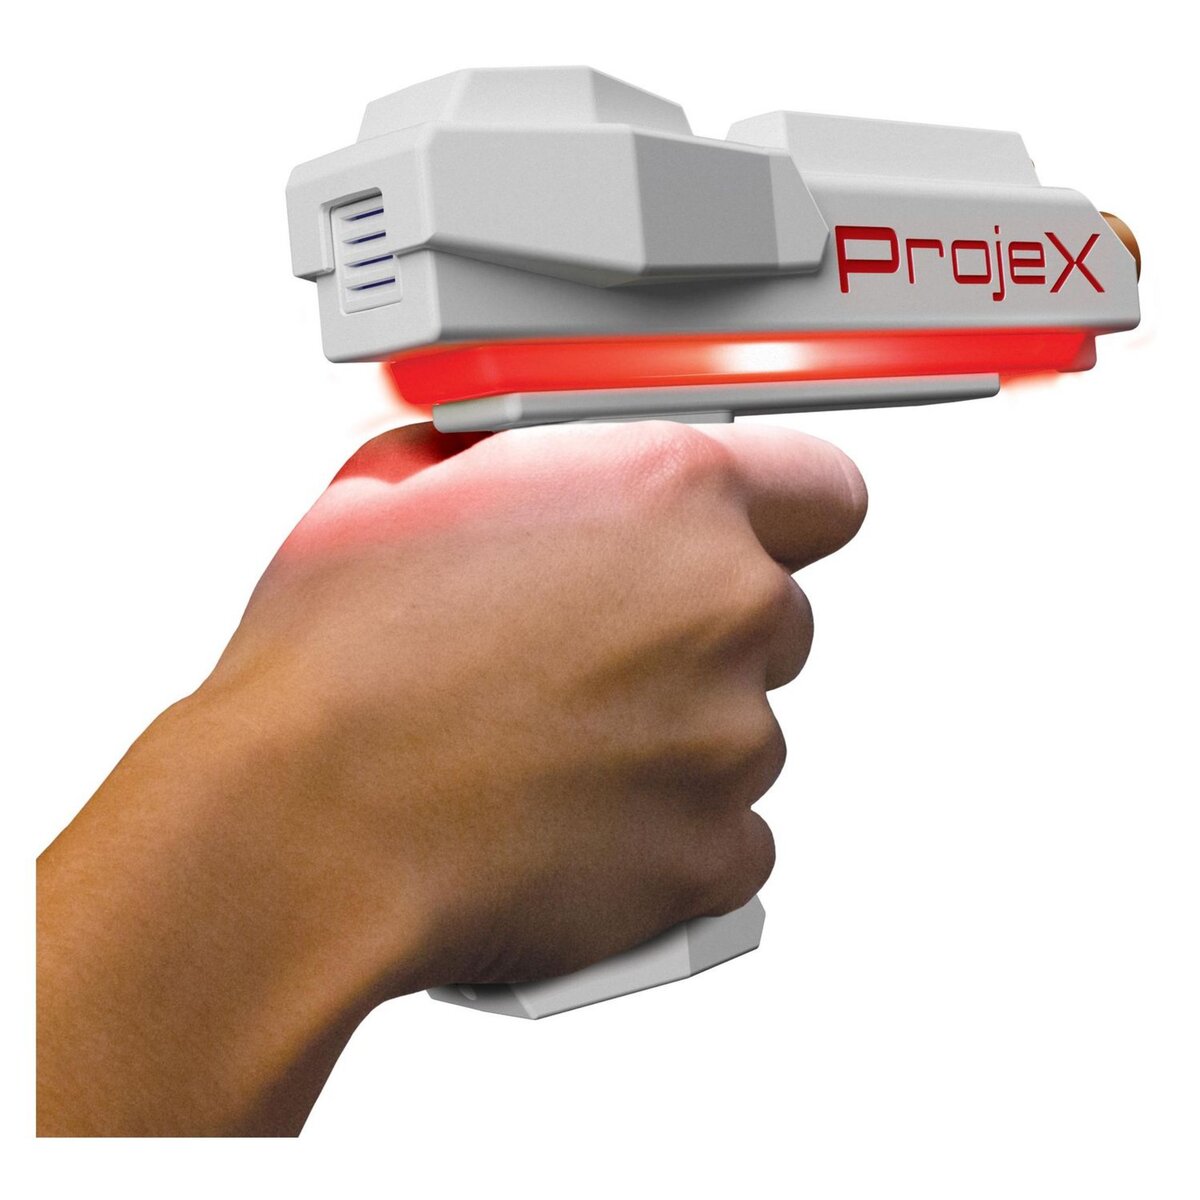 PROJEX - Jeu de tir électronique